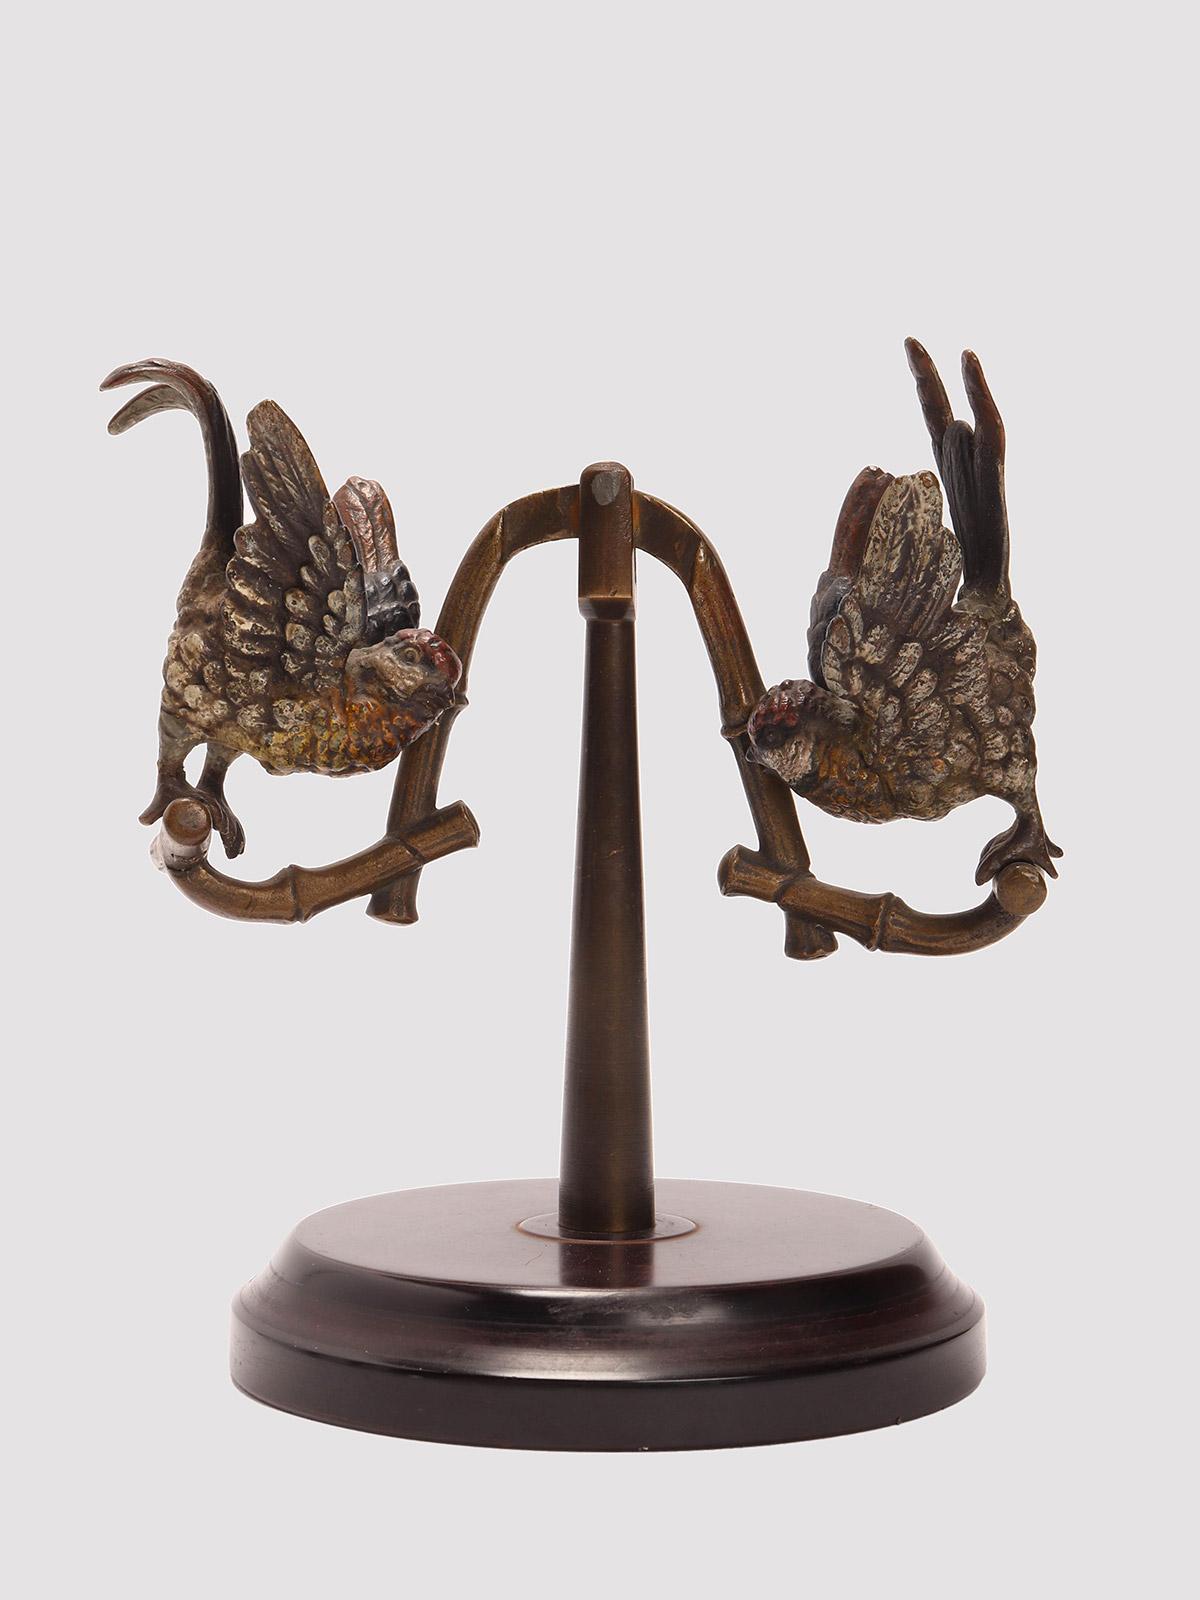 Wiener Bronzeskulptur, die eine Schaukel mit zwei Papageien darstellt, montiert auf einem runden Galalithsockel. Die beiden Papageien sind in verschiedenen Farben gemalt. Arbeitsbewegung. Wien Österreich um 1890.